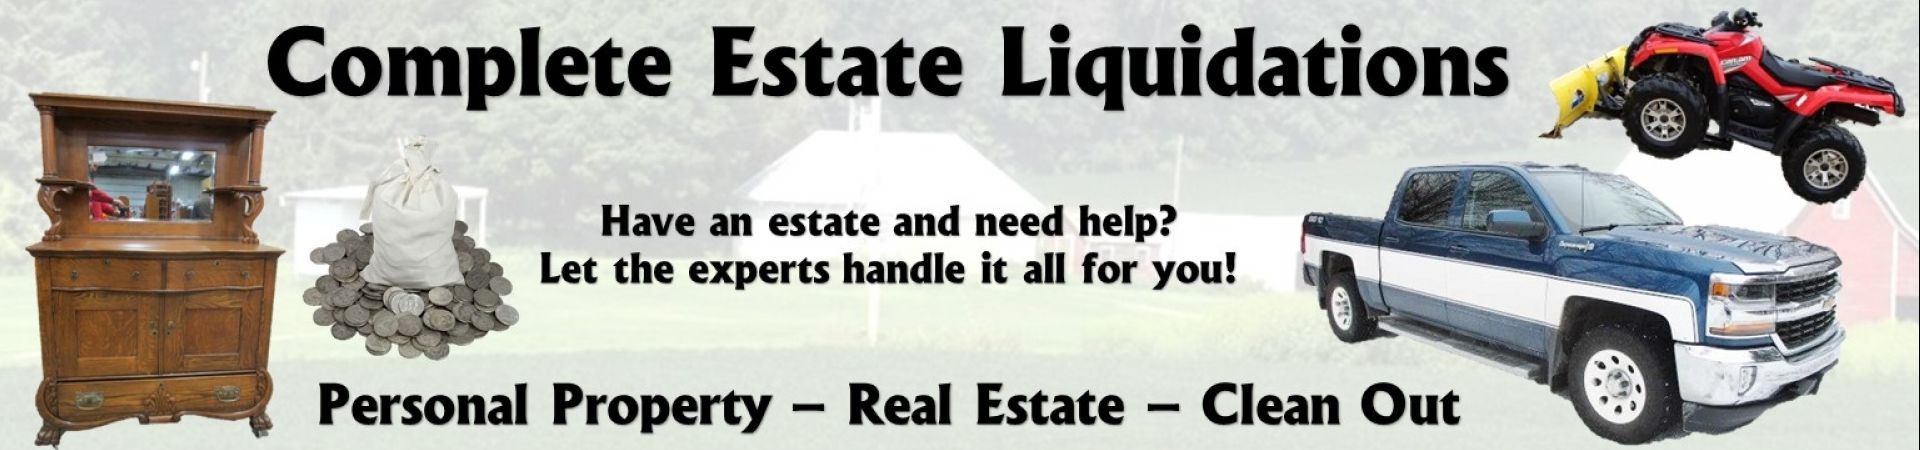 Estate liquidation banner